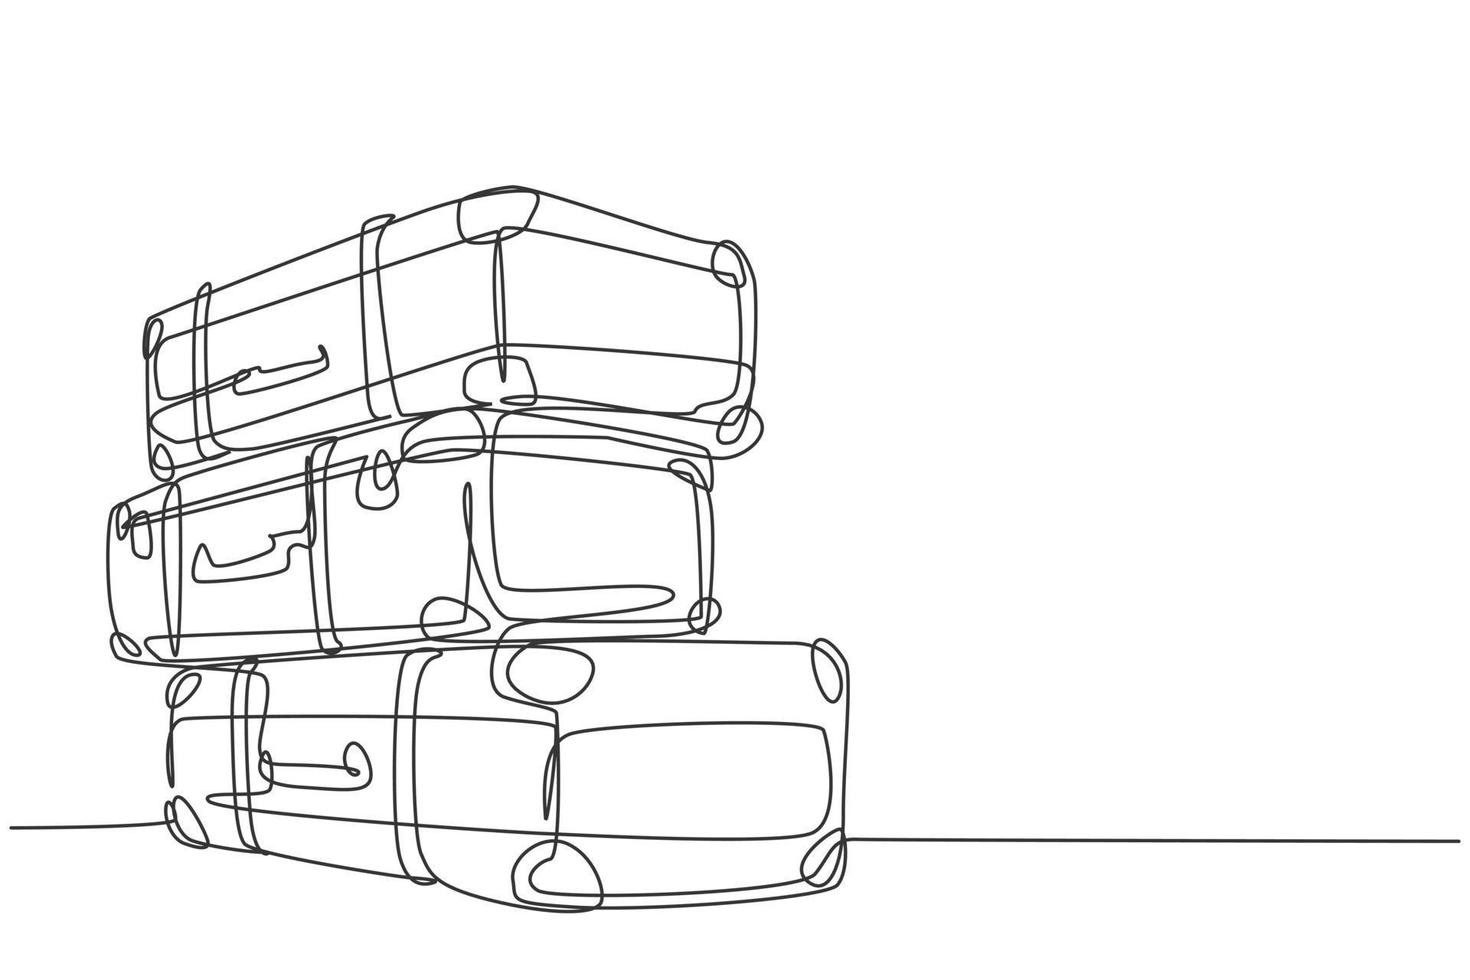 en kontinuerlig linje ritning av gamla retro vintage läder resväskor stack. klassisk resa objekt koncept enda rad rita grafisk design vektor illustration